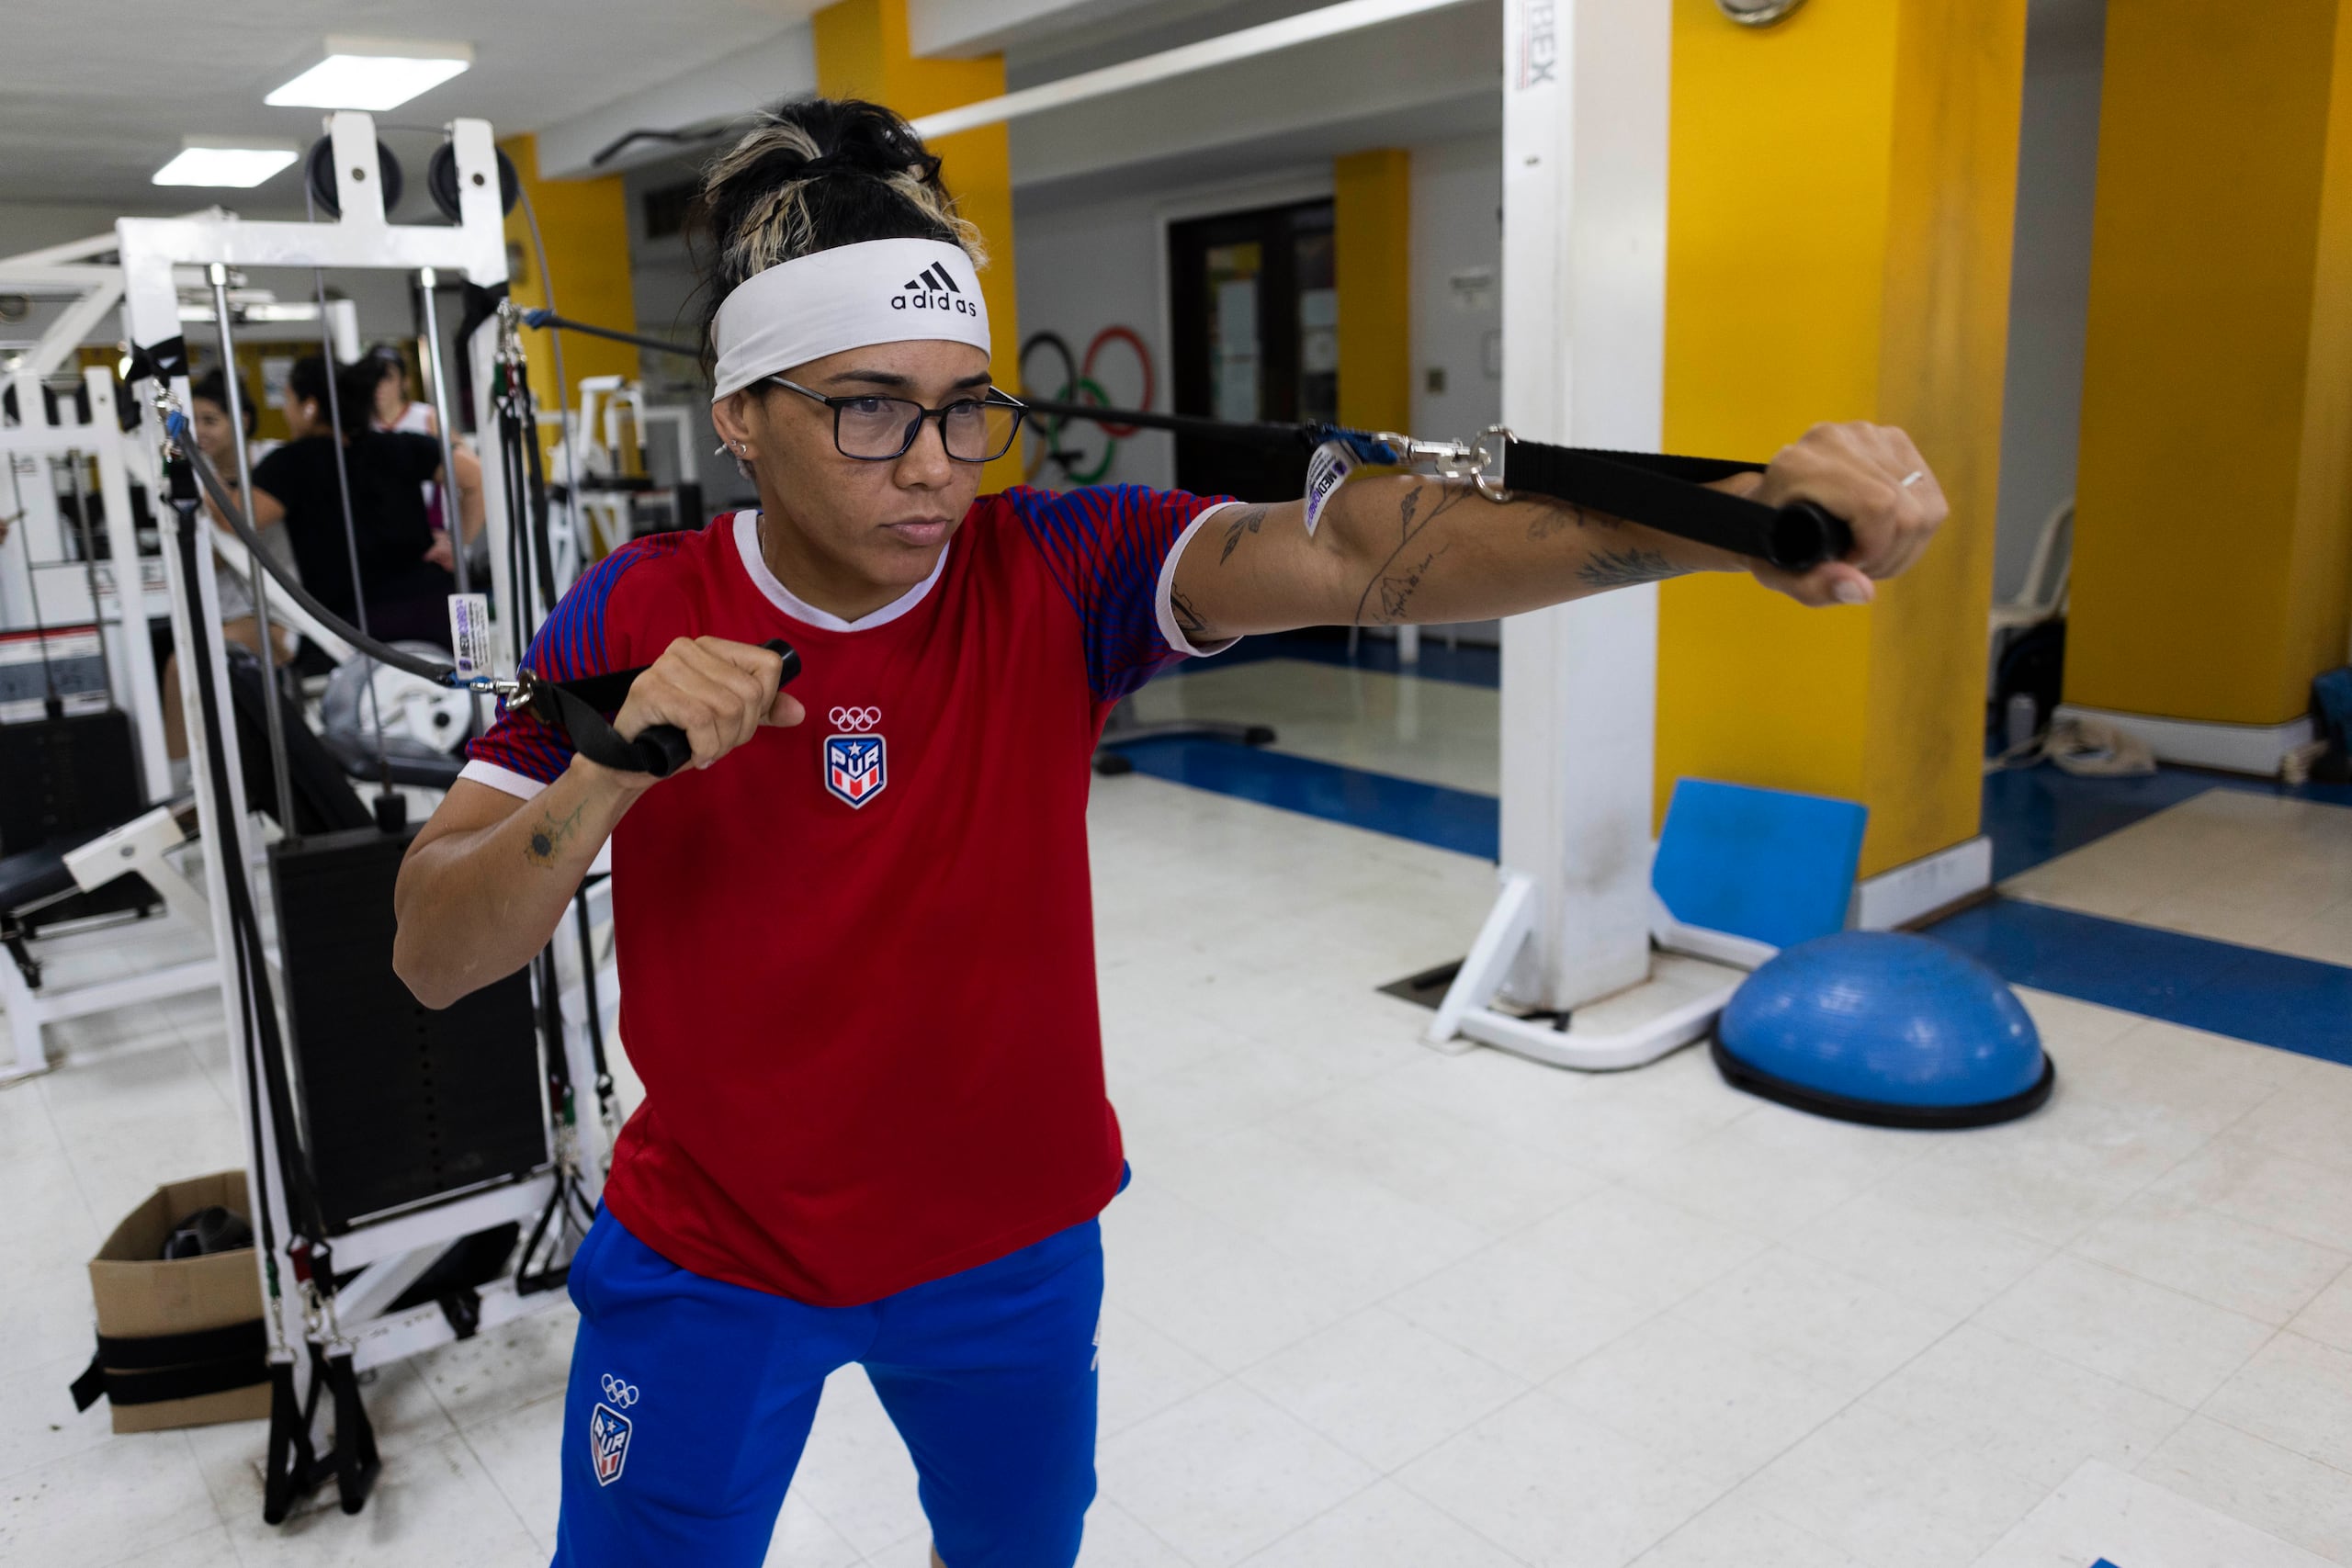 Ashleyann trabaja en el gimnasio de la Casa Olimpica de Viejo San Juan para regresar al peso de los 57 kilogramos en que competirá en París 2024.